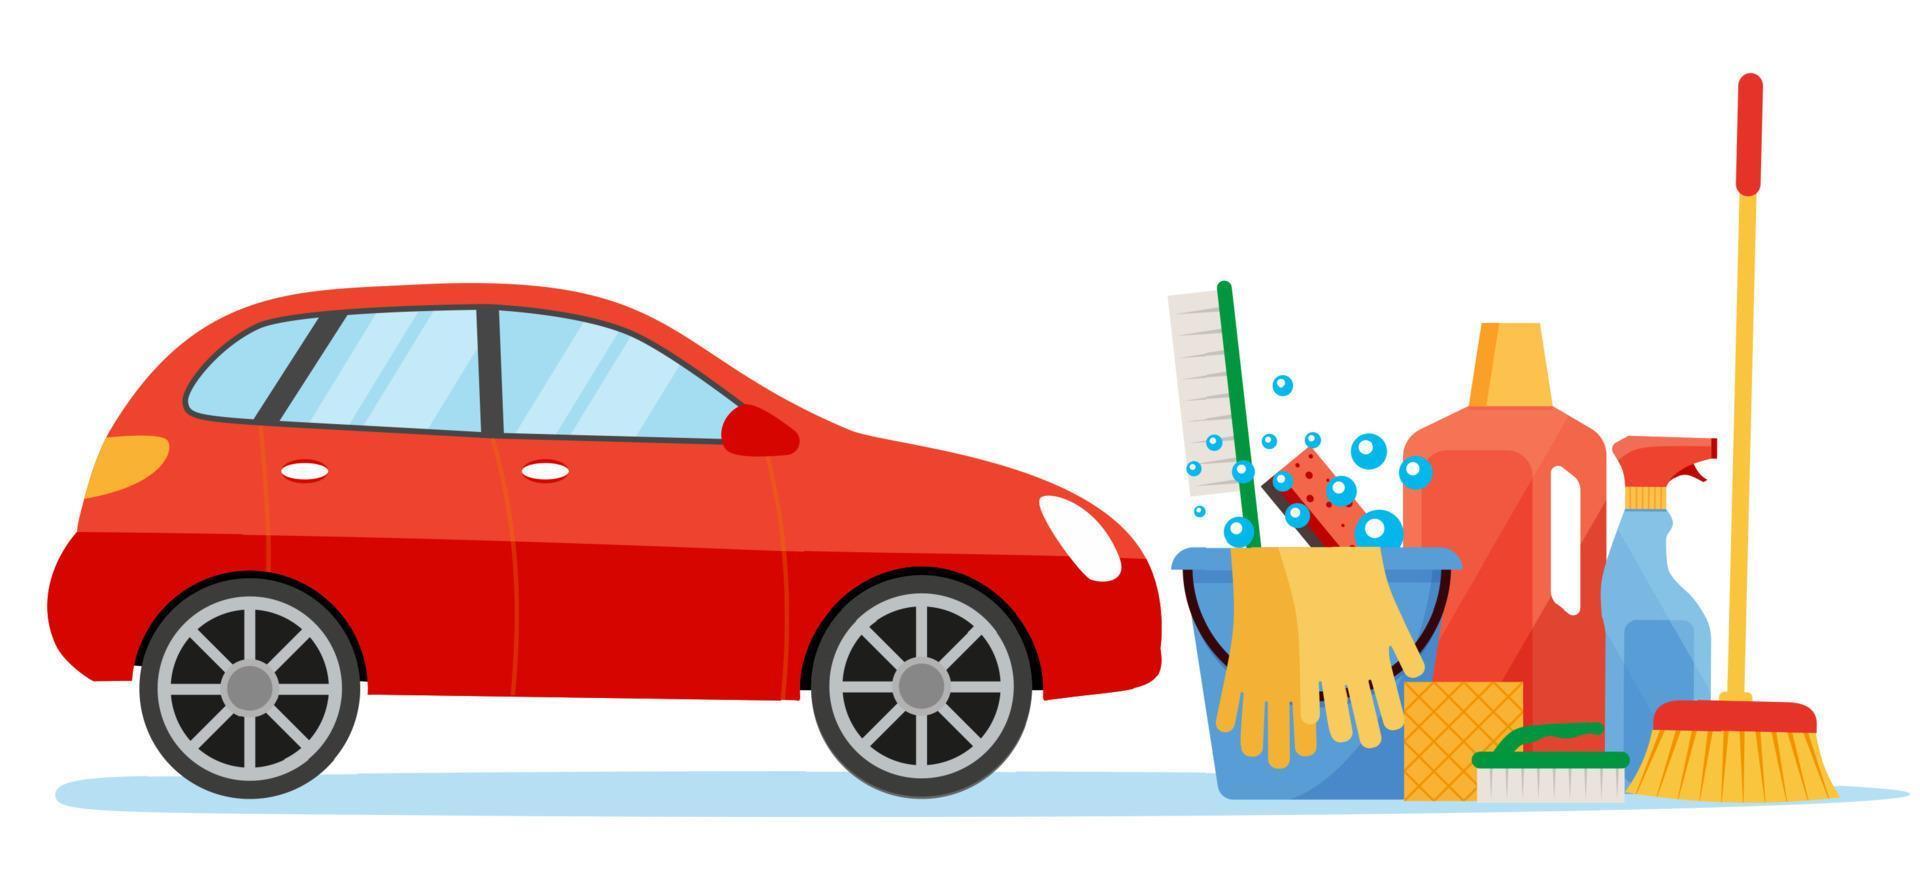 servicio de lavado de autos. ilustraciones web en estilo plano. vector